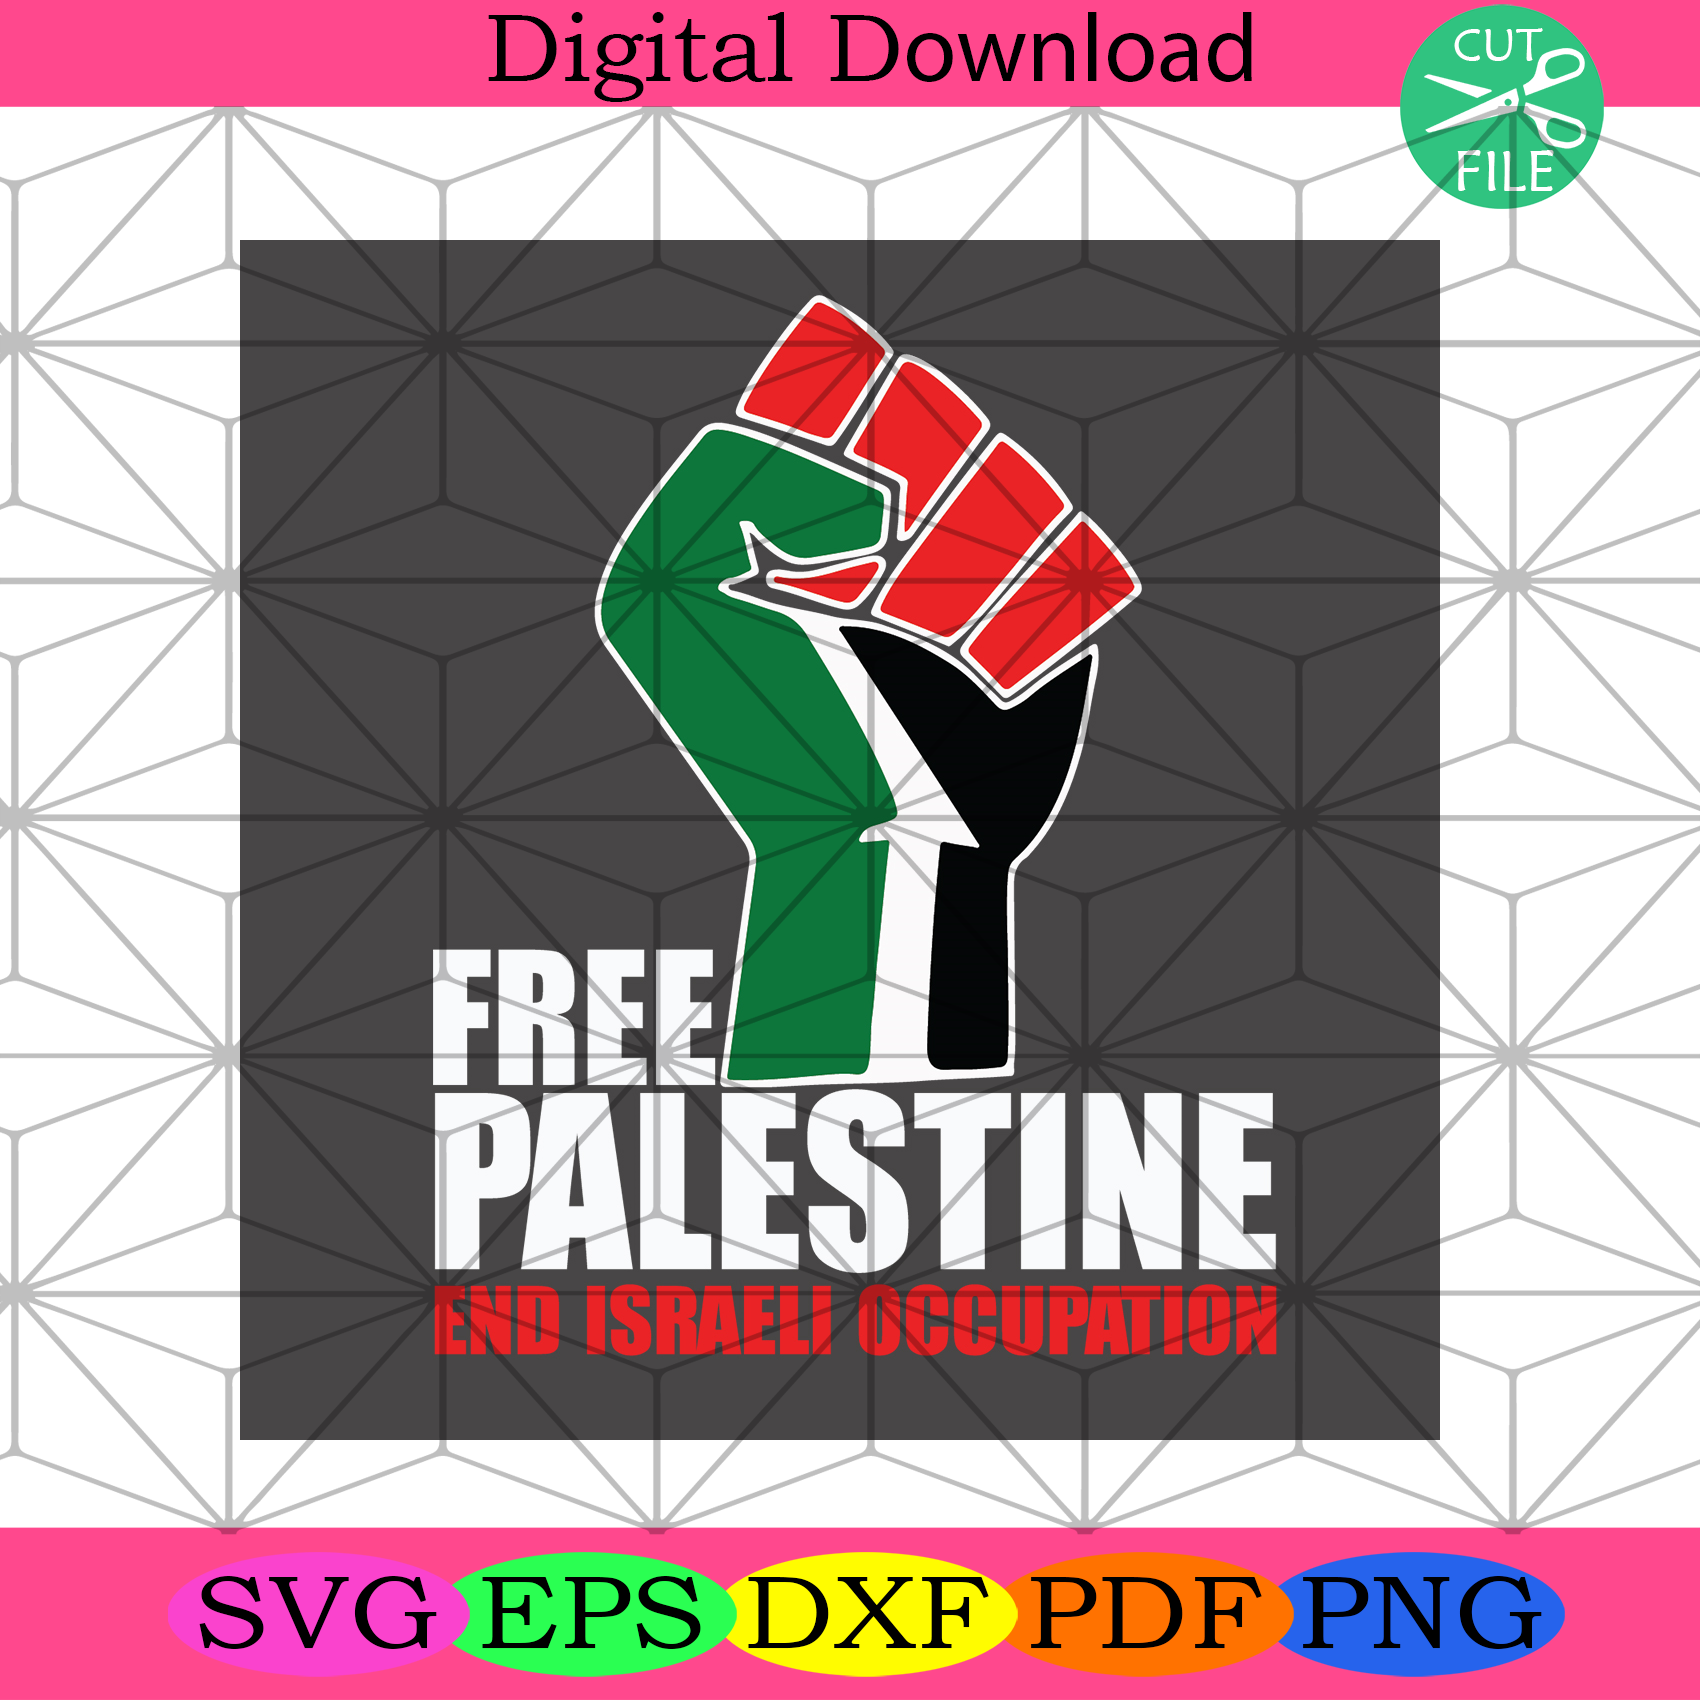 Free Palestine End Israeli Occupation Svg Trending Svg, Freedom Svg